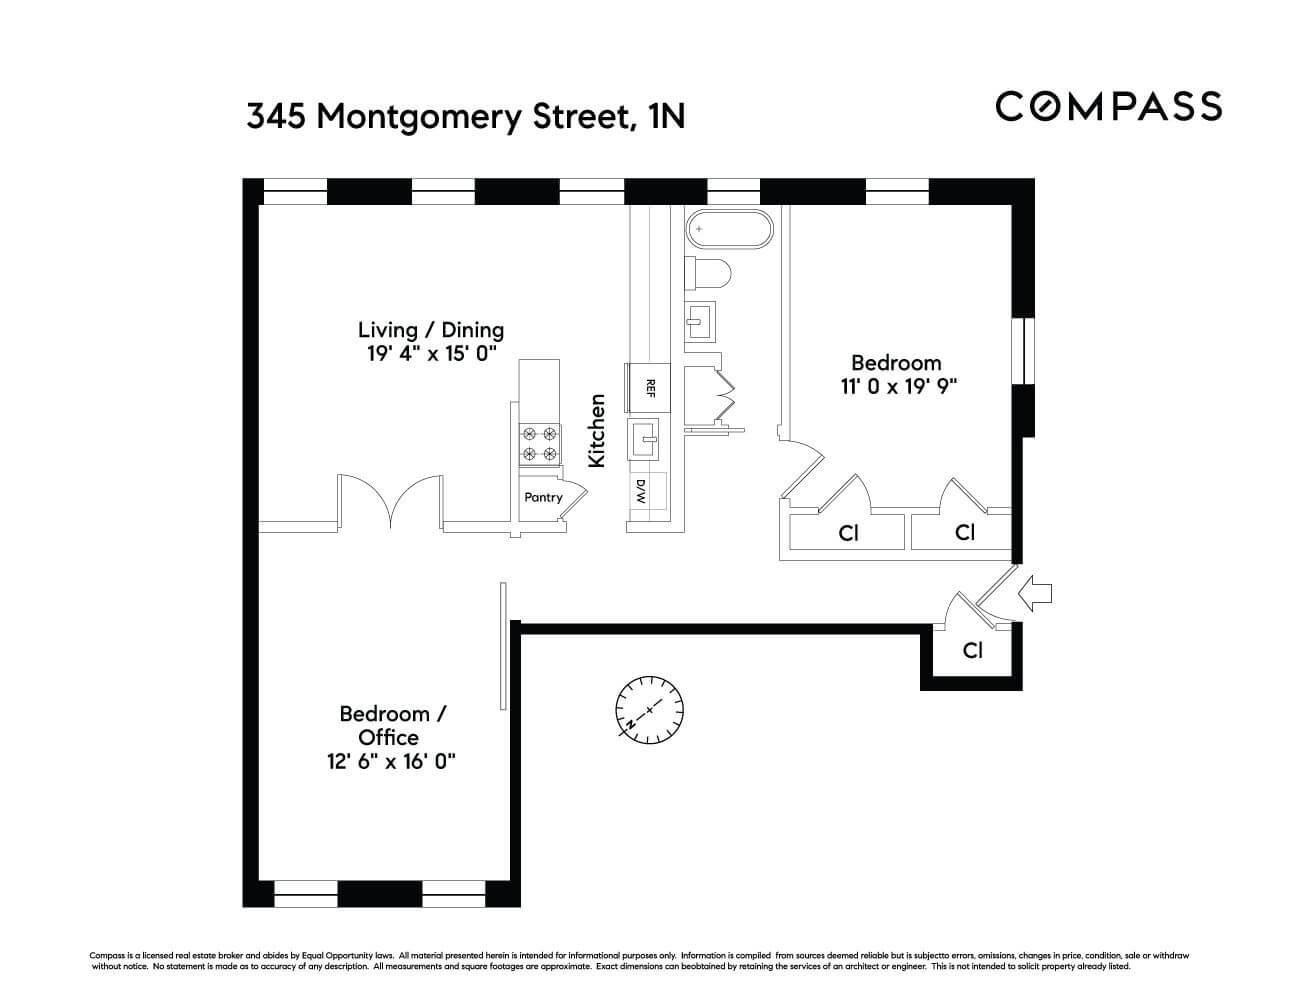 floor plan of apt 1n at 345 montgomery